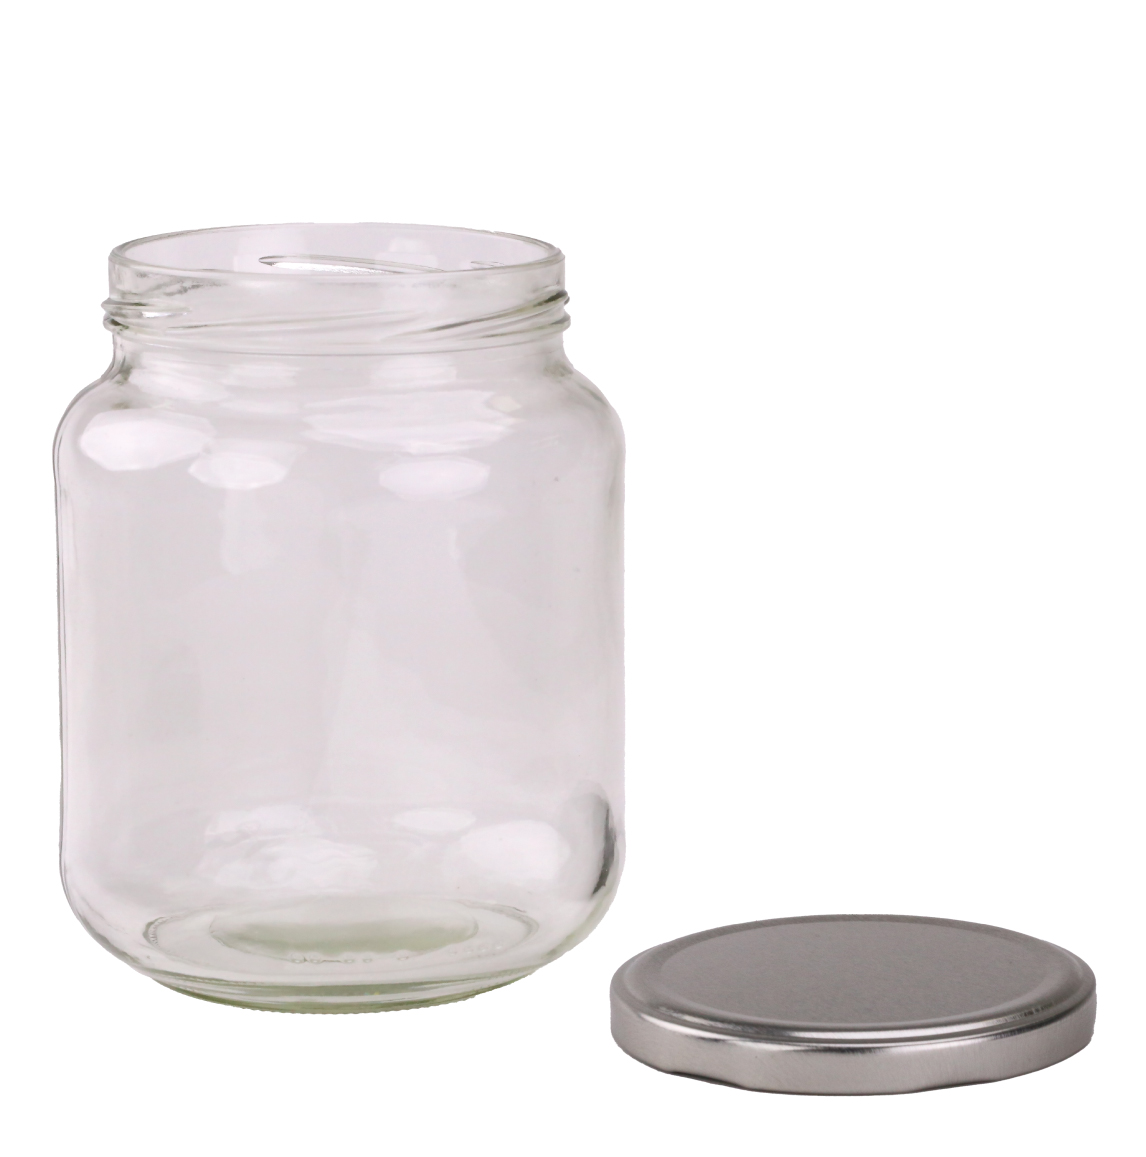 Round Glass Jars - 720ml / 1kg - Wide - Glass Jar with Lids